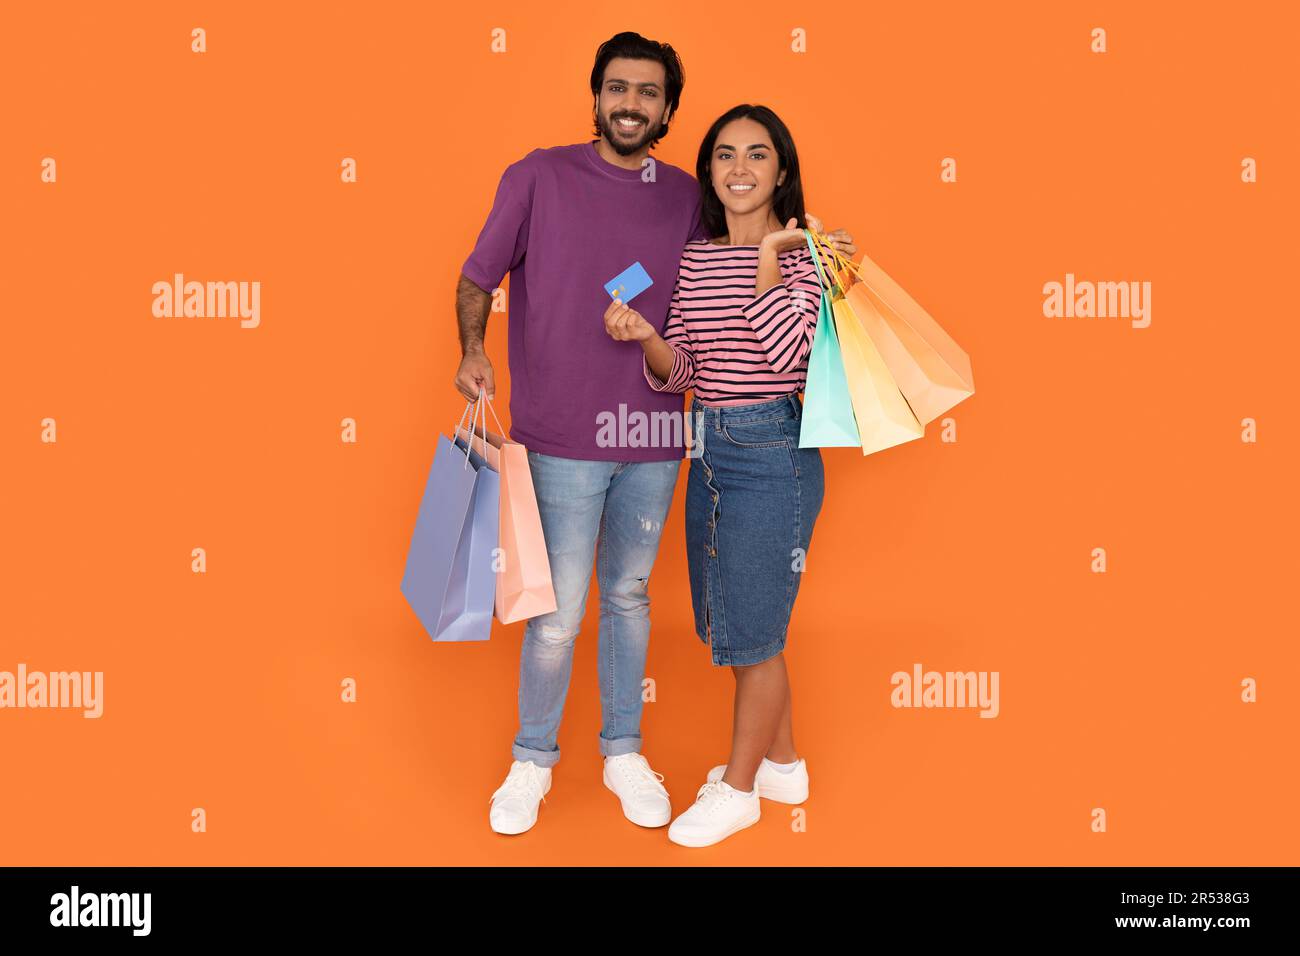 Les amoureux indiens heureux tenant des sacs d'achats et une carte bancaire Banque D'Images